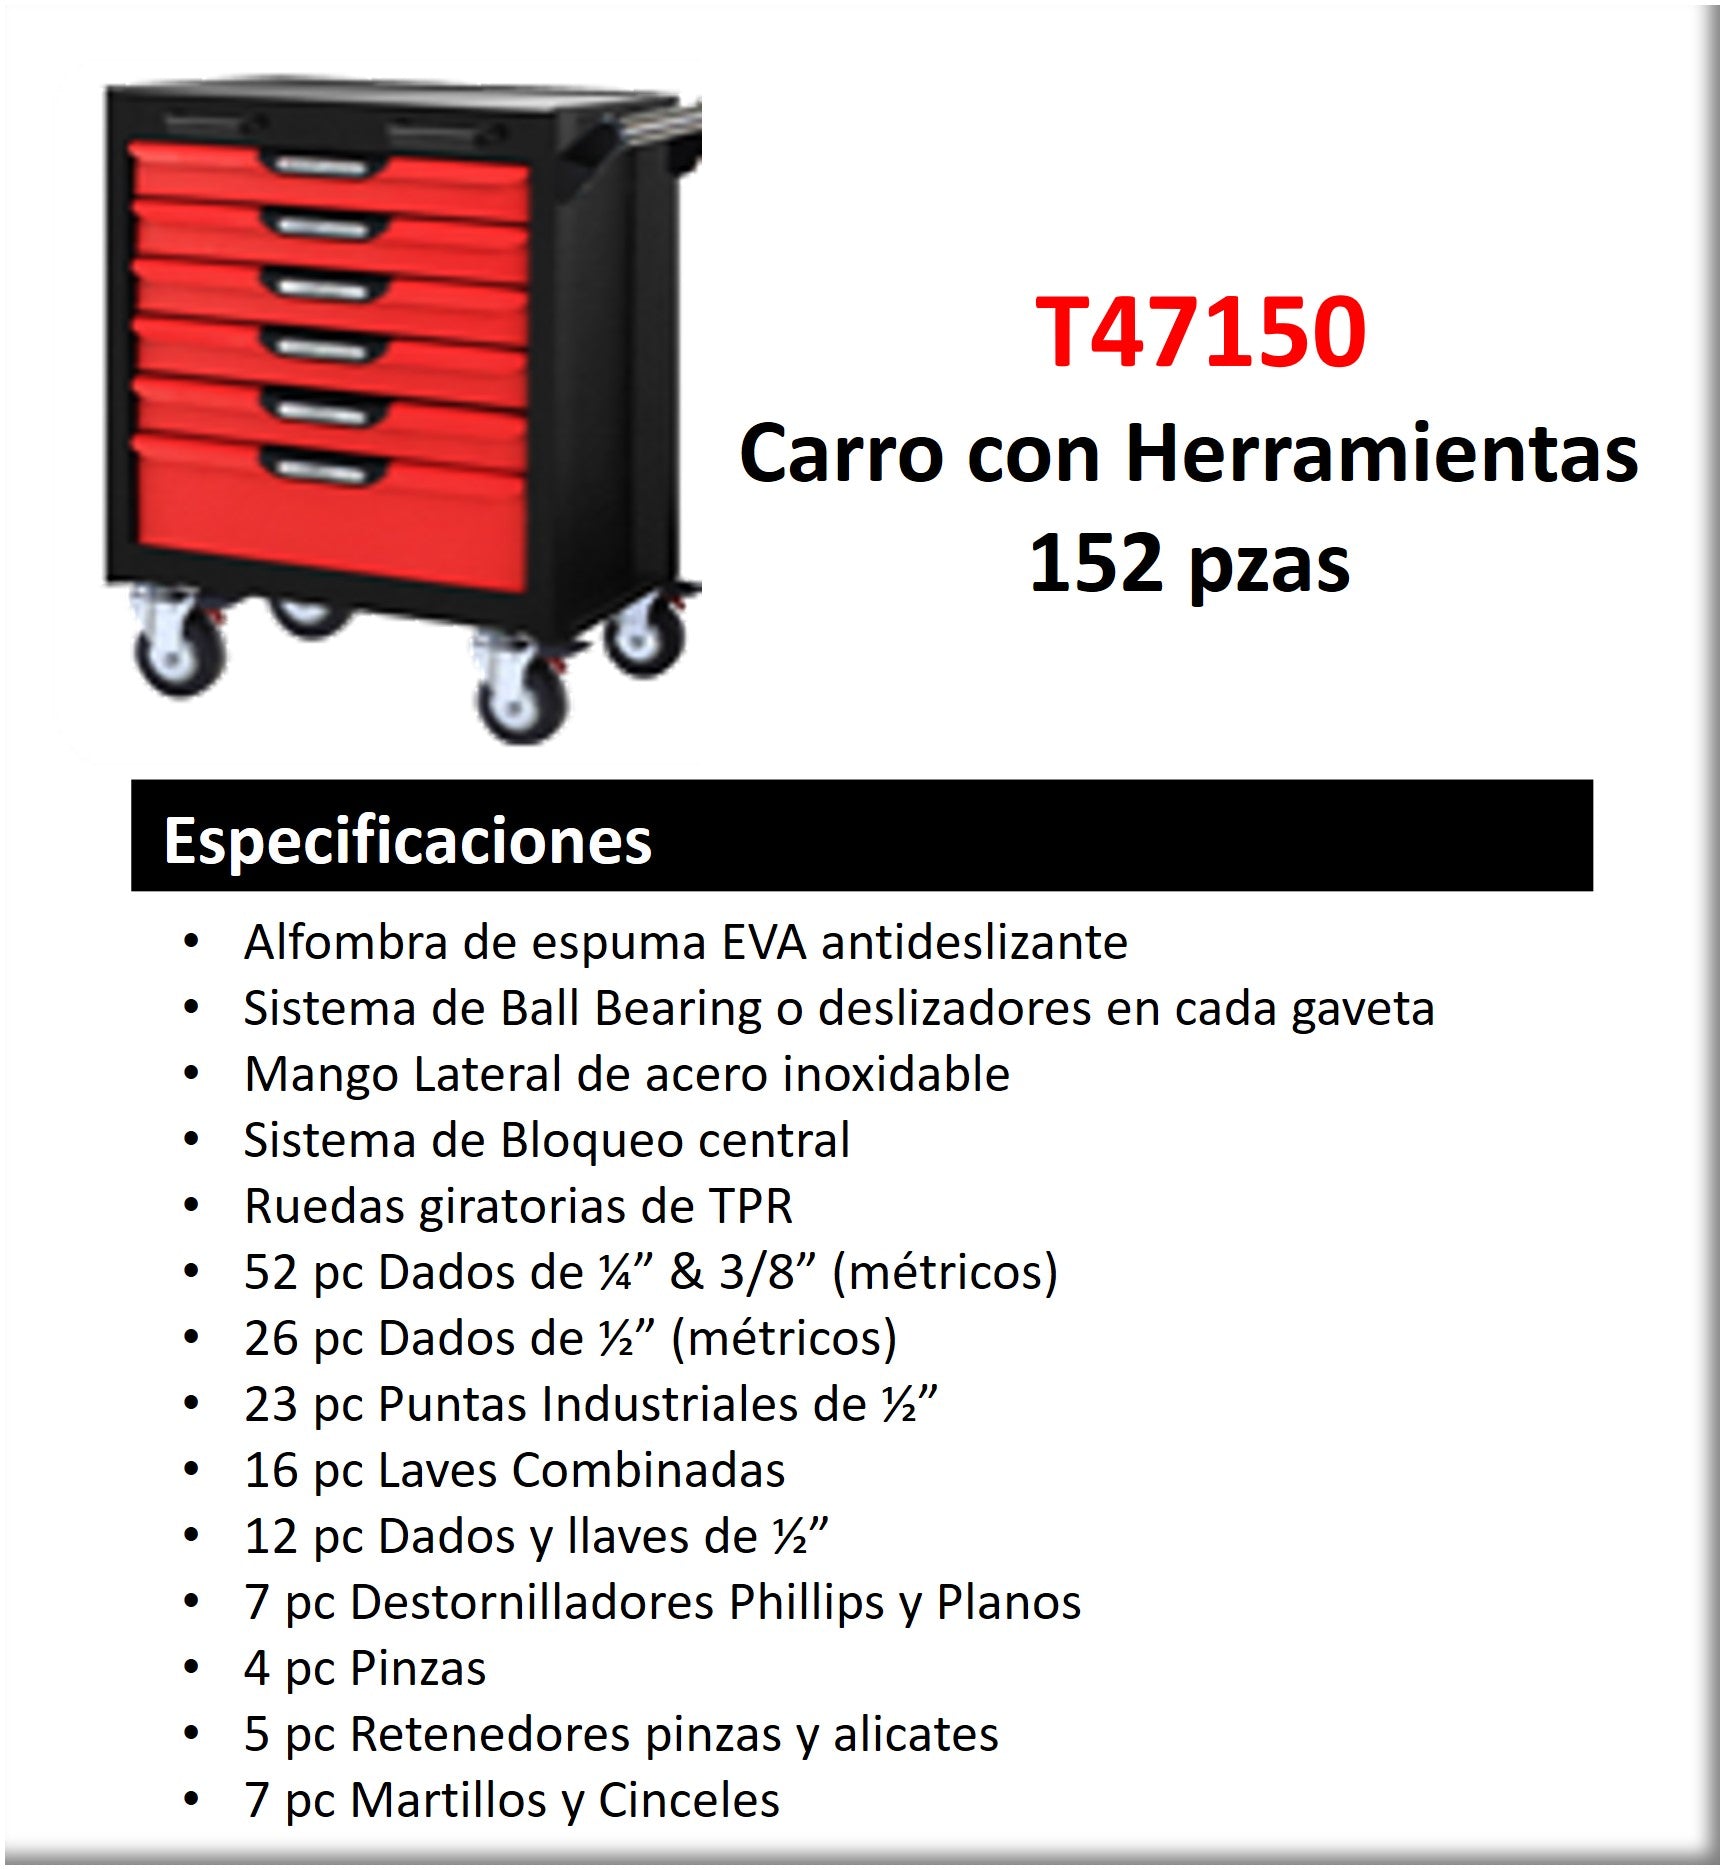 CARRO CON HERRAMIENTAS 152 PZS 6 GAVETAS DADOS Y LLAVES EN MM Y HERRAM -  Hidroca Panamá